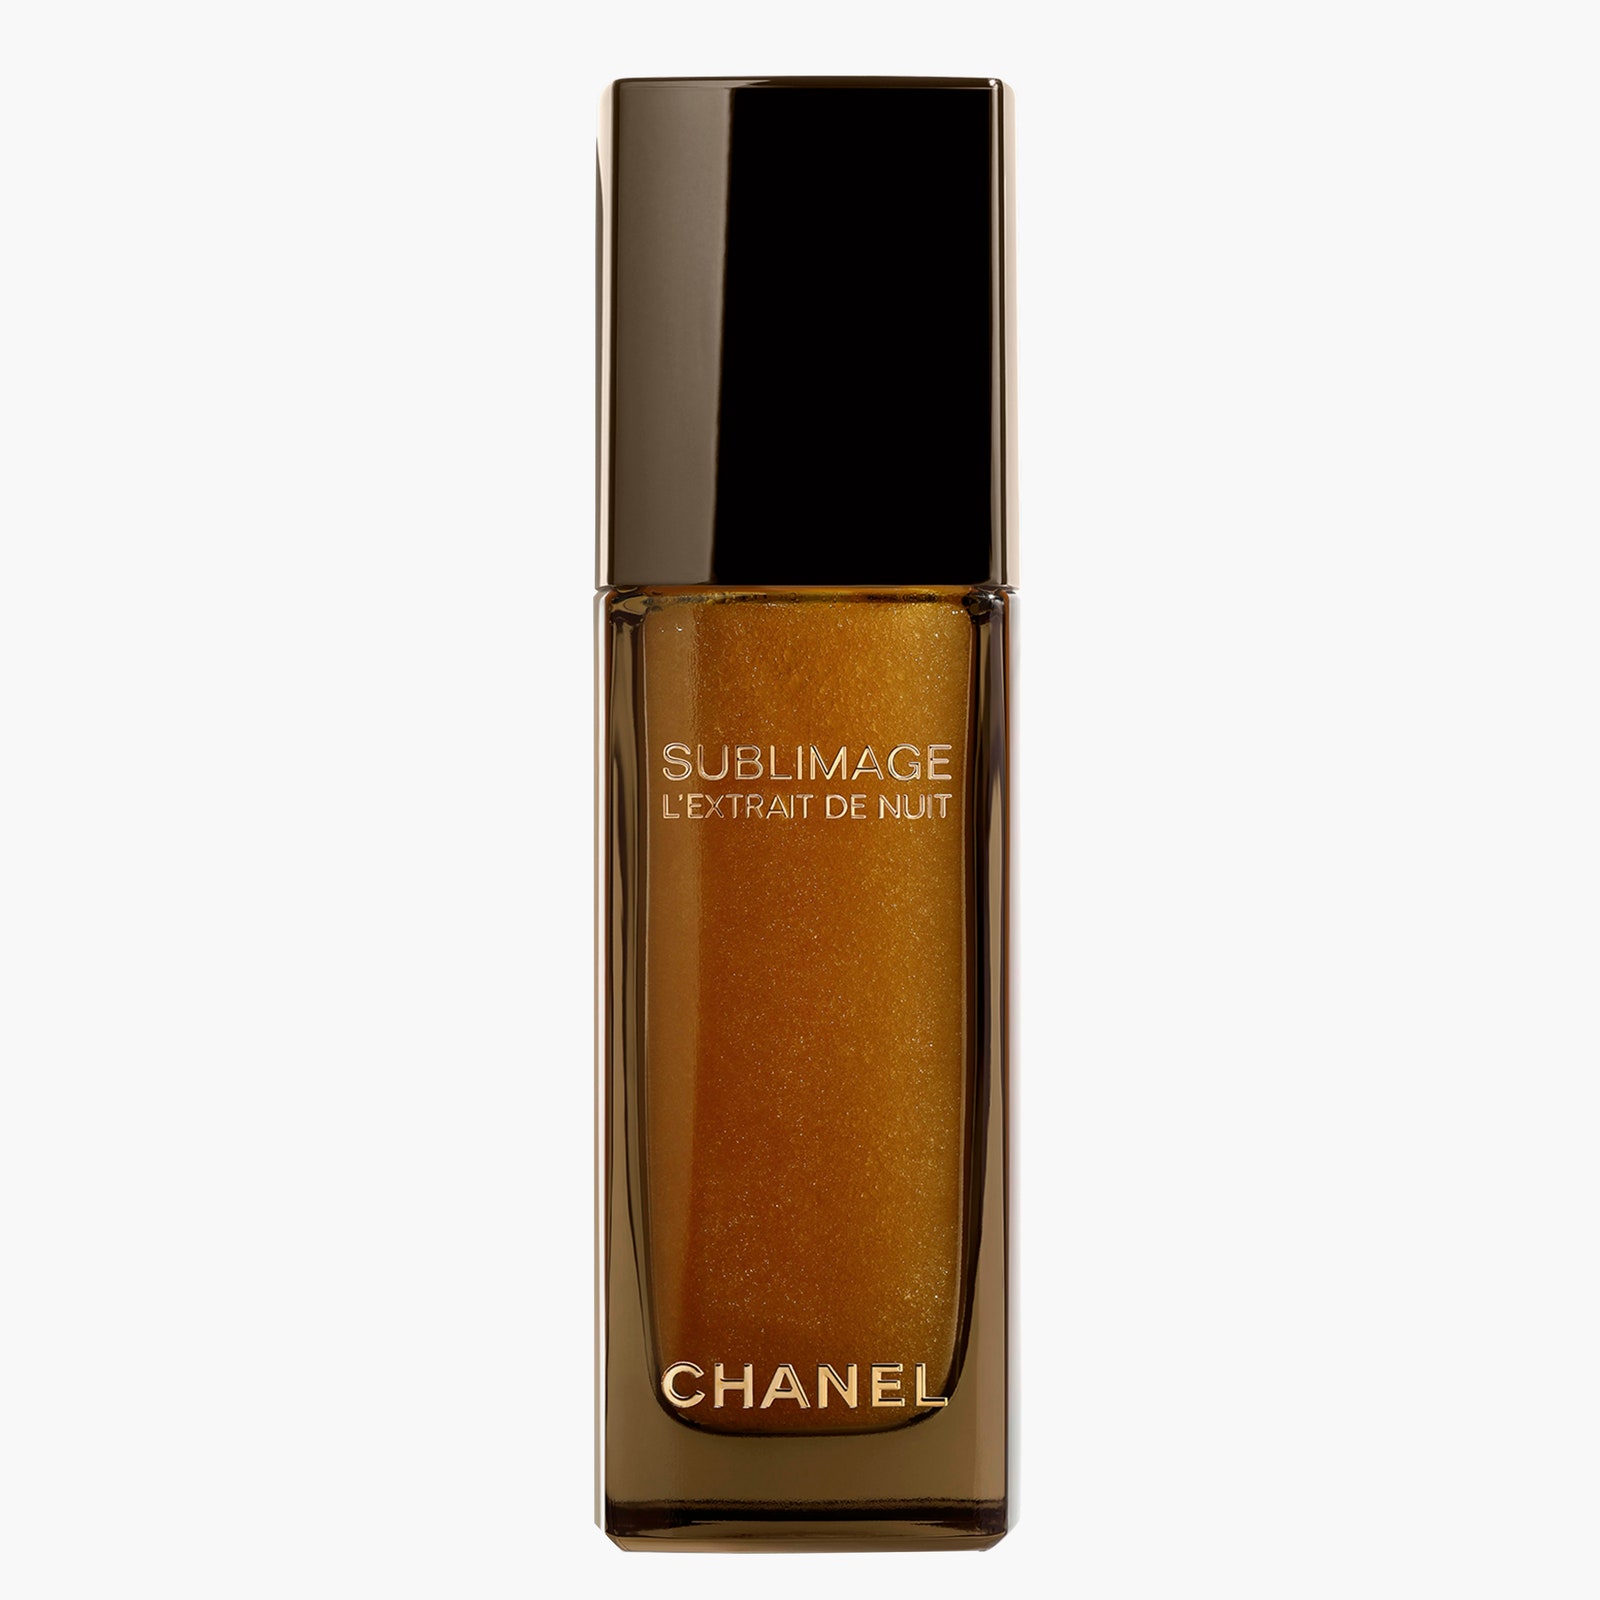 Ночной экстракт Sublimage Chanel 42000 рублей